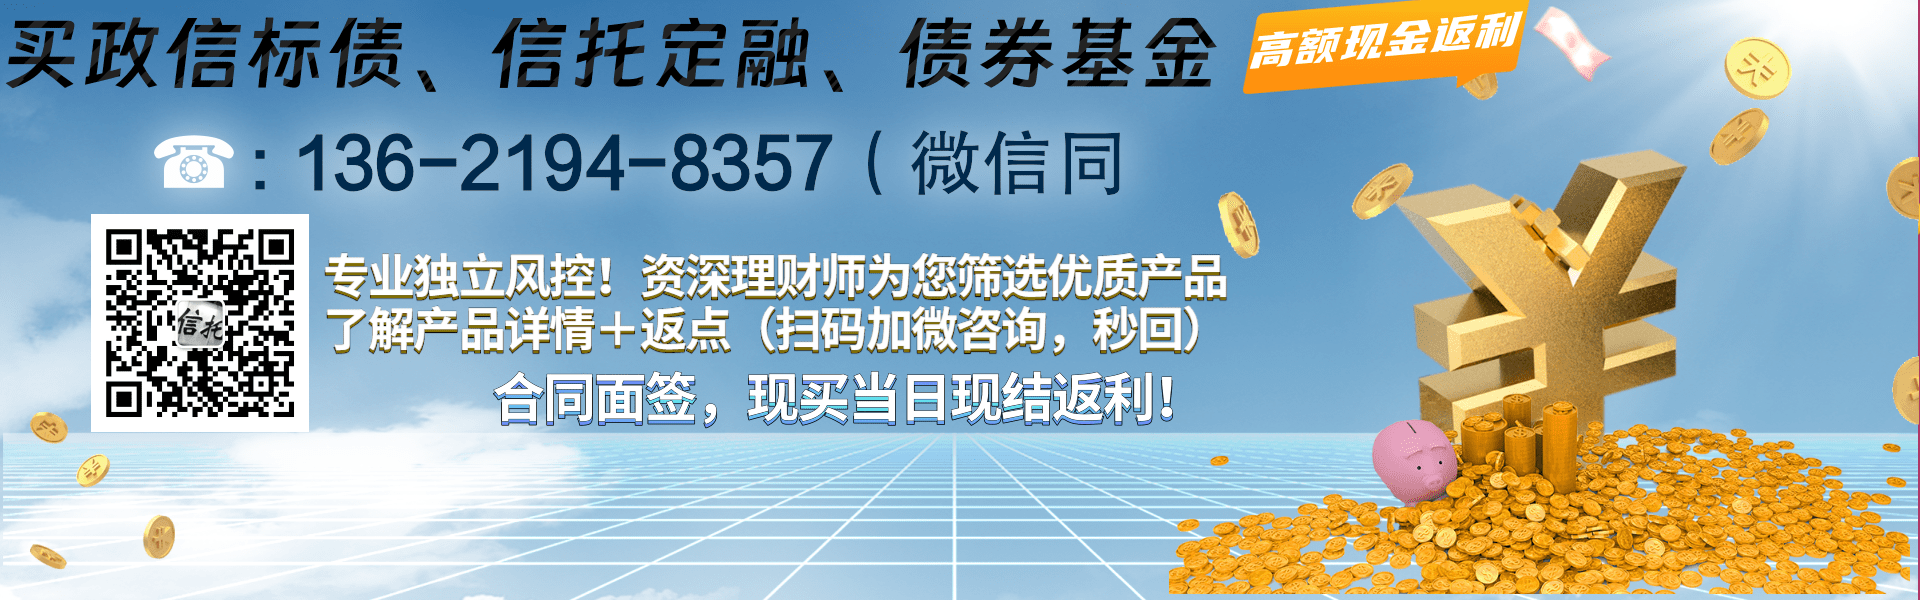 潍坊滨海旅游债权收益权